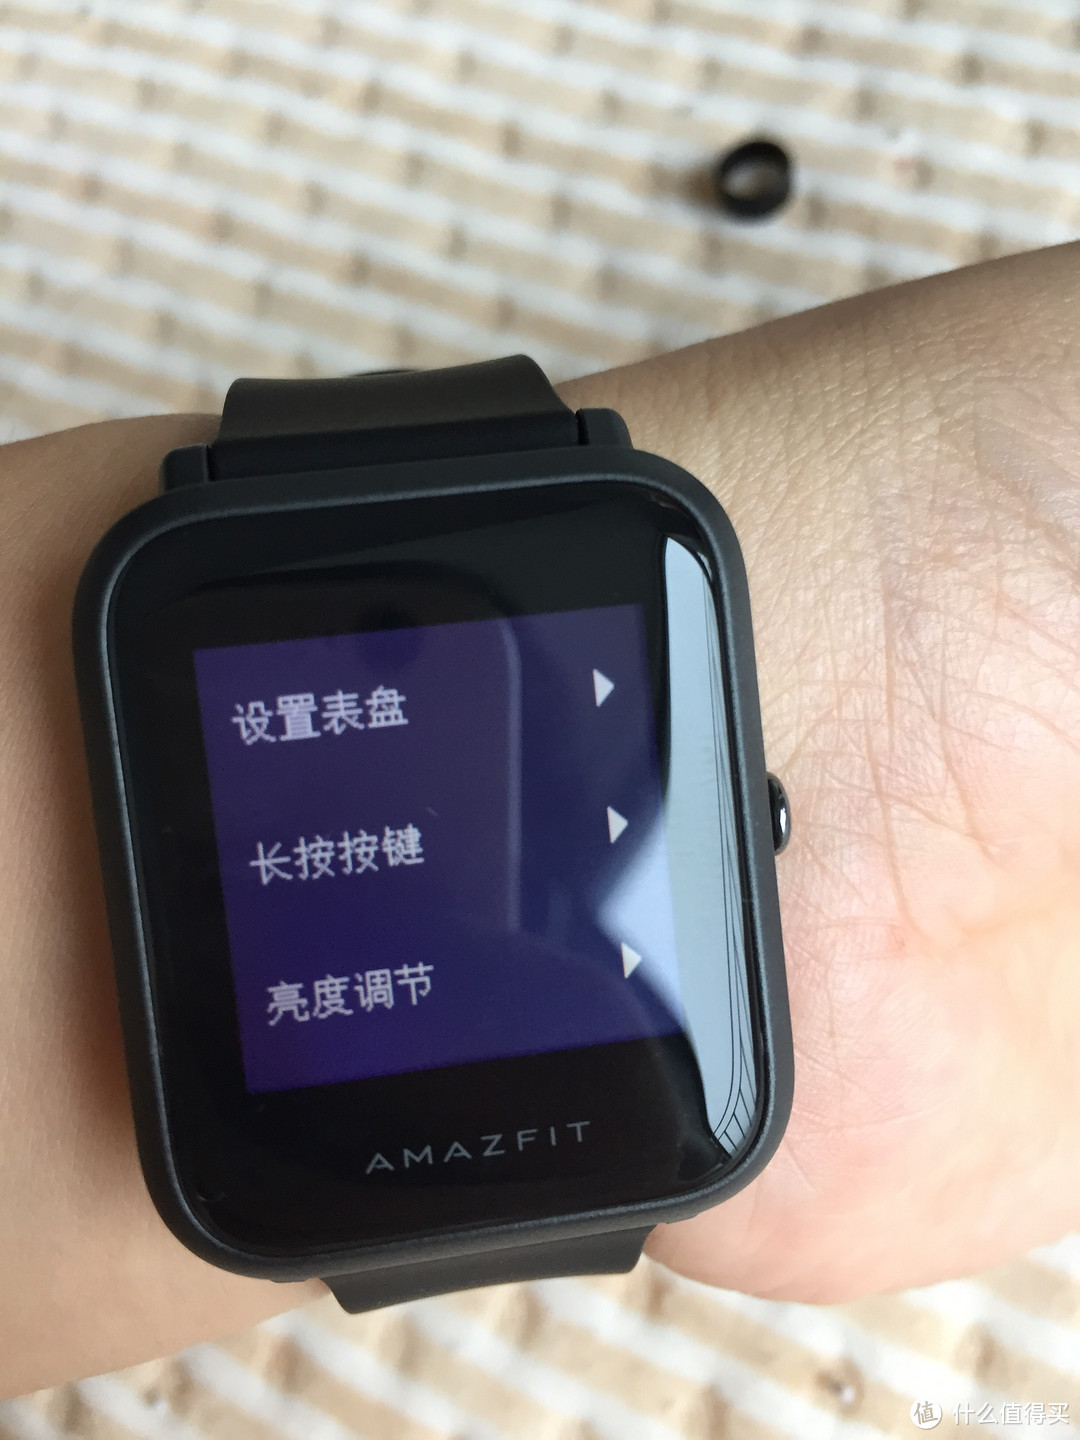 这就是我要的智能手表 — Amazfit 华米 米动手表青春版X石黑开箱晒物测评